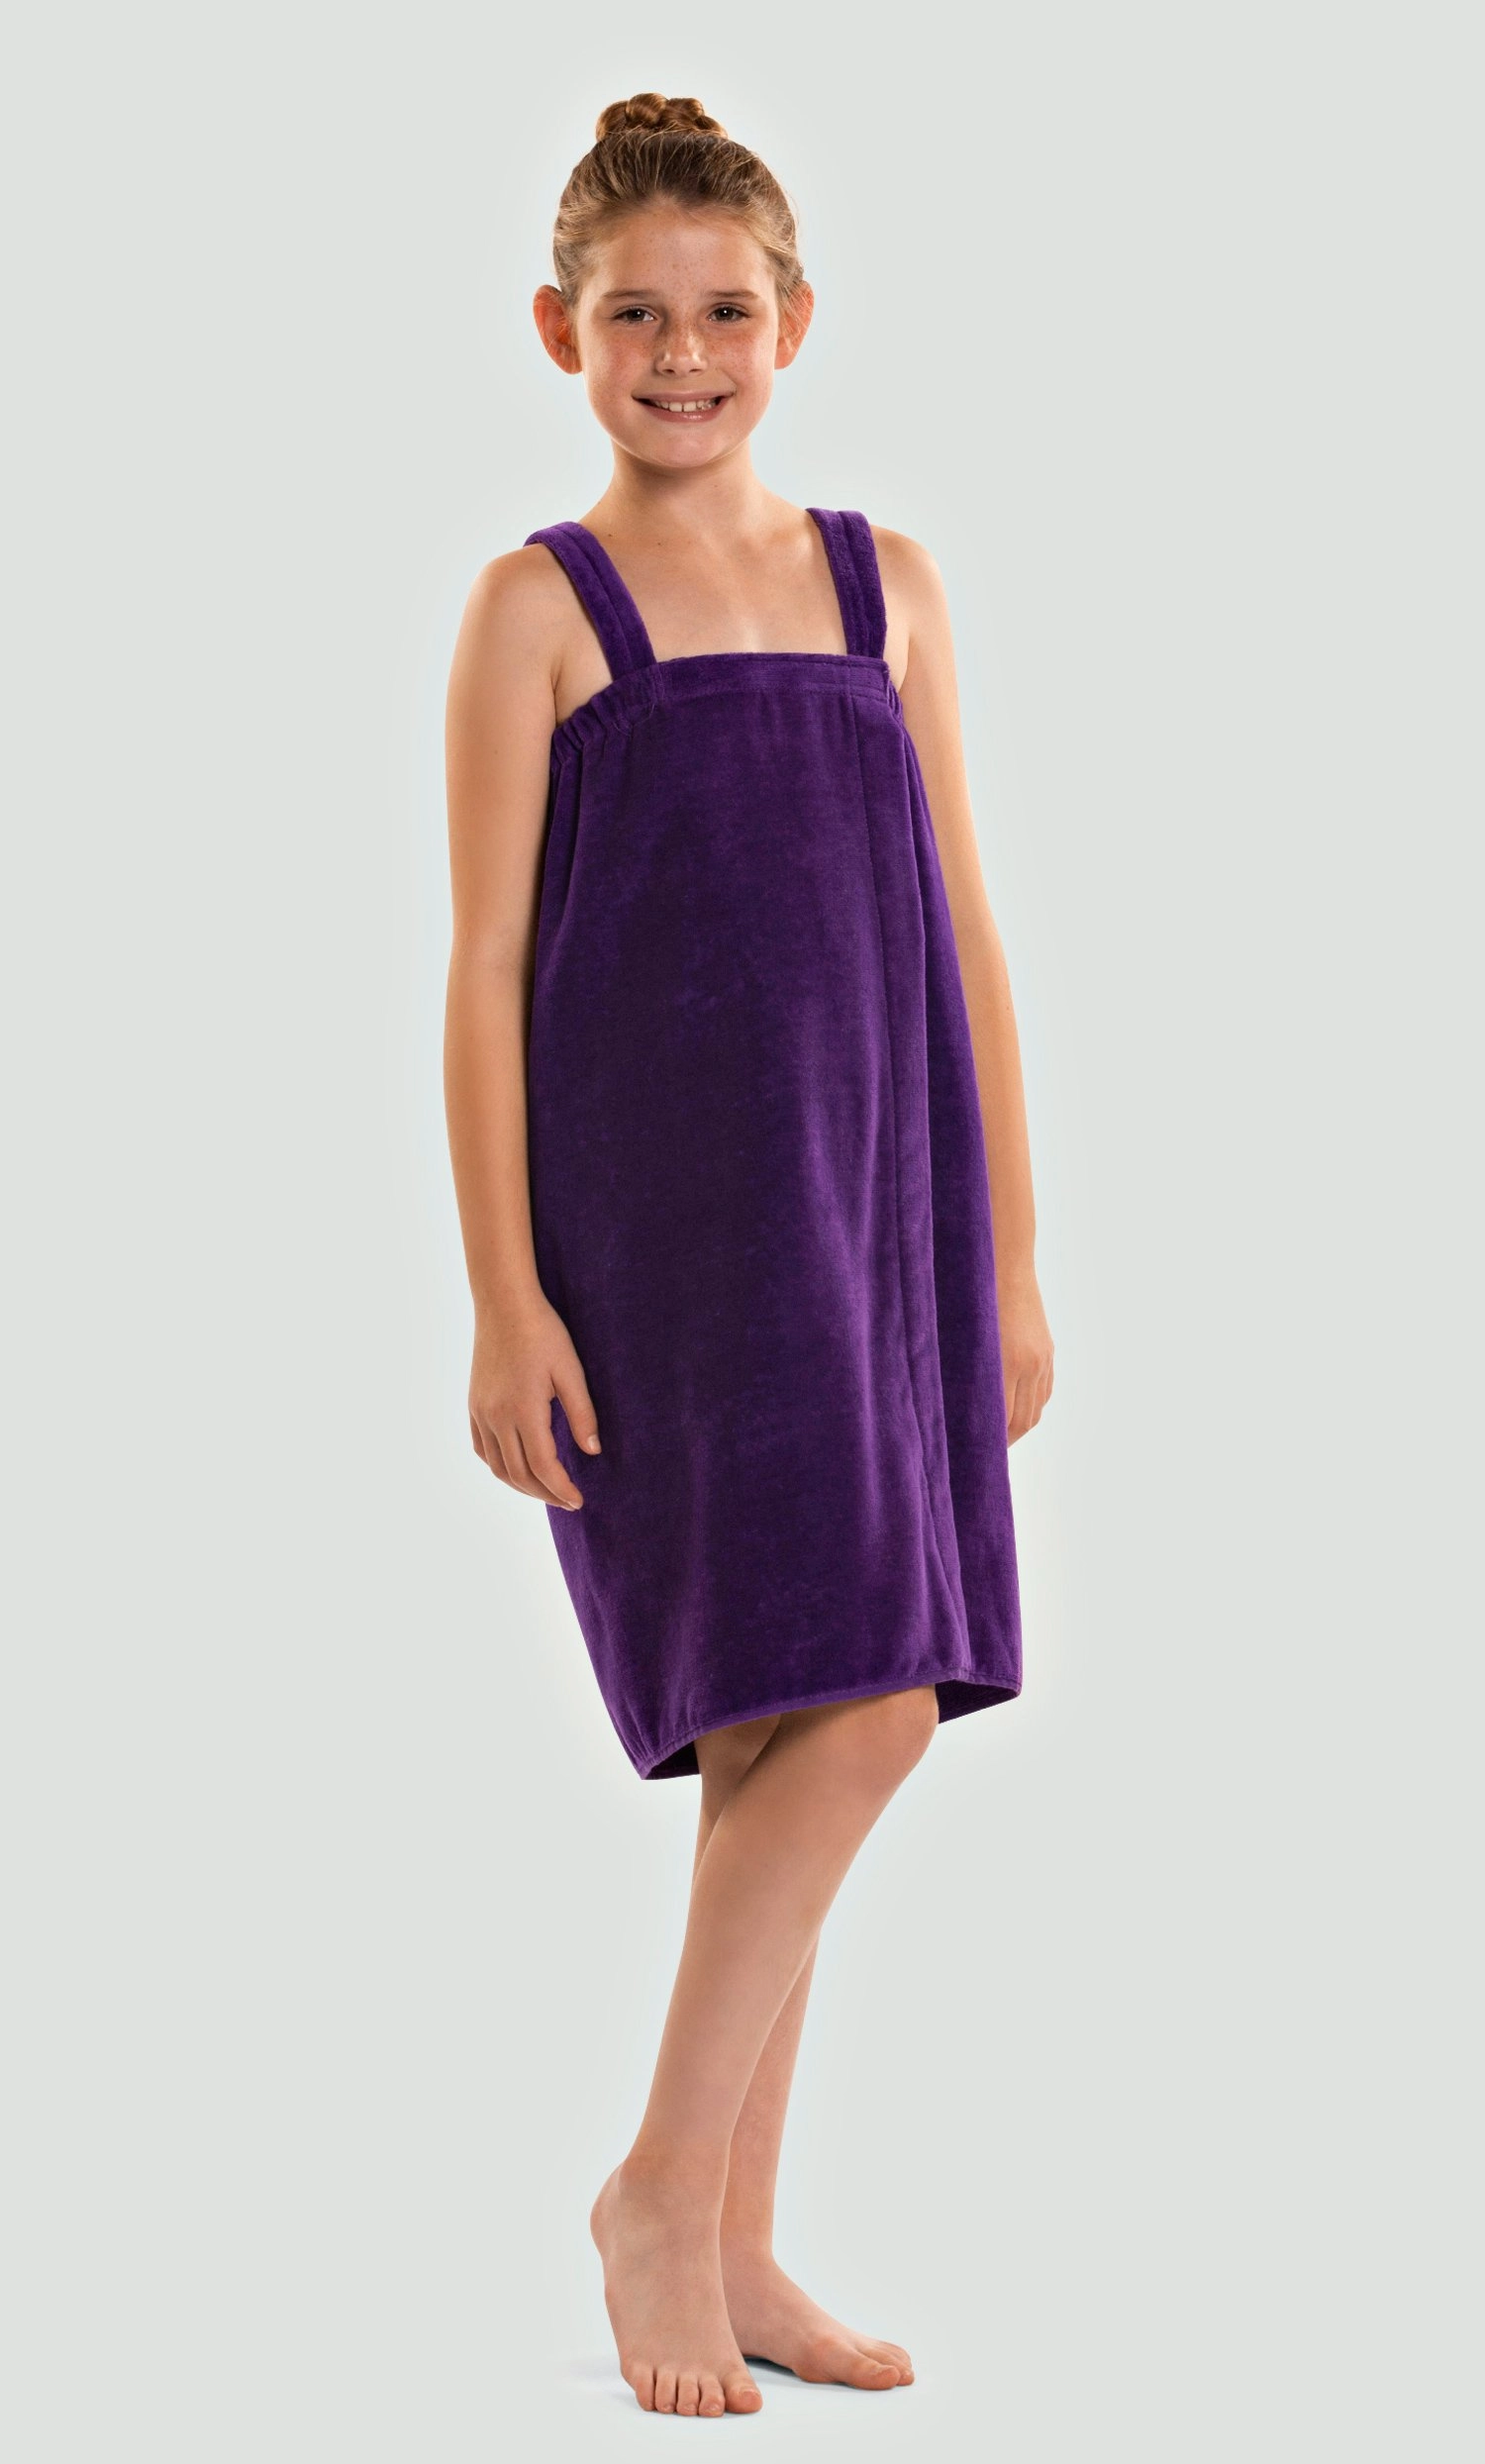 Velcro Wraps :: 100% Cotton Men Terry Velour Cloth Body Wrap, Bath Towel  Wrap - Turquaz Linen, Towels, Robes, Linen and More!